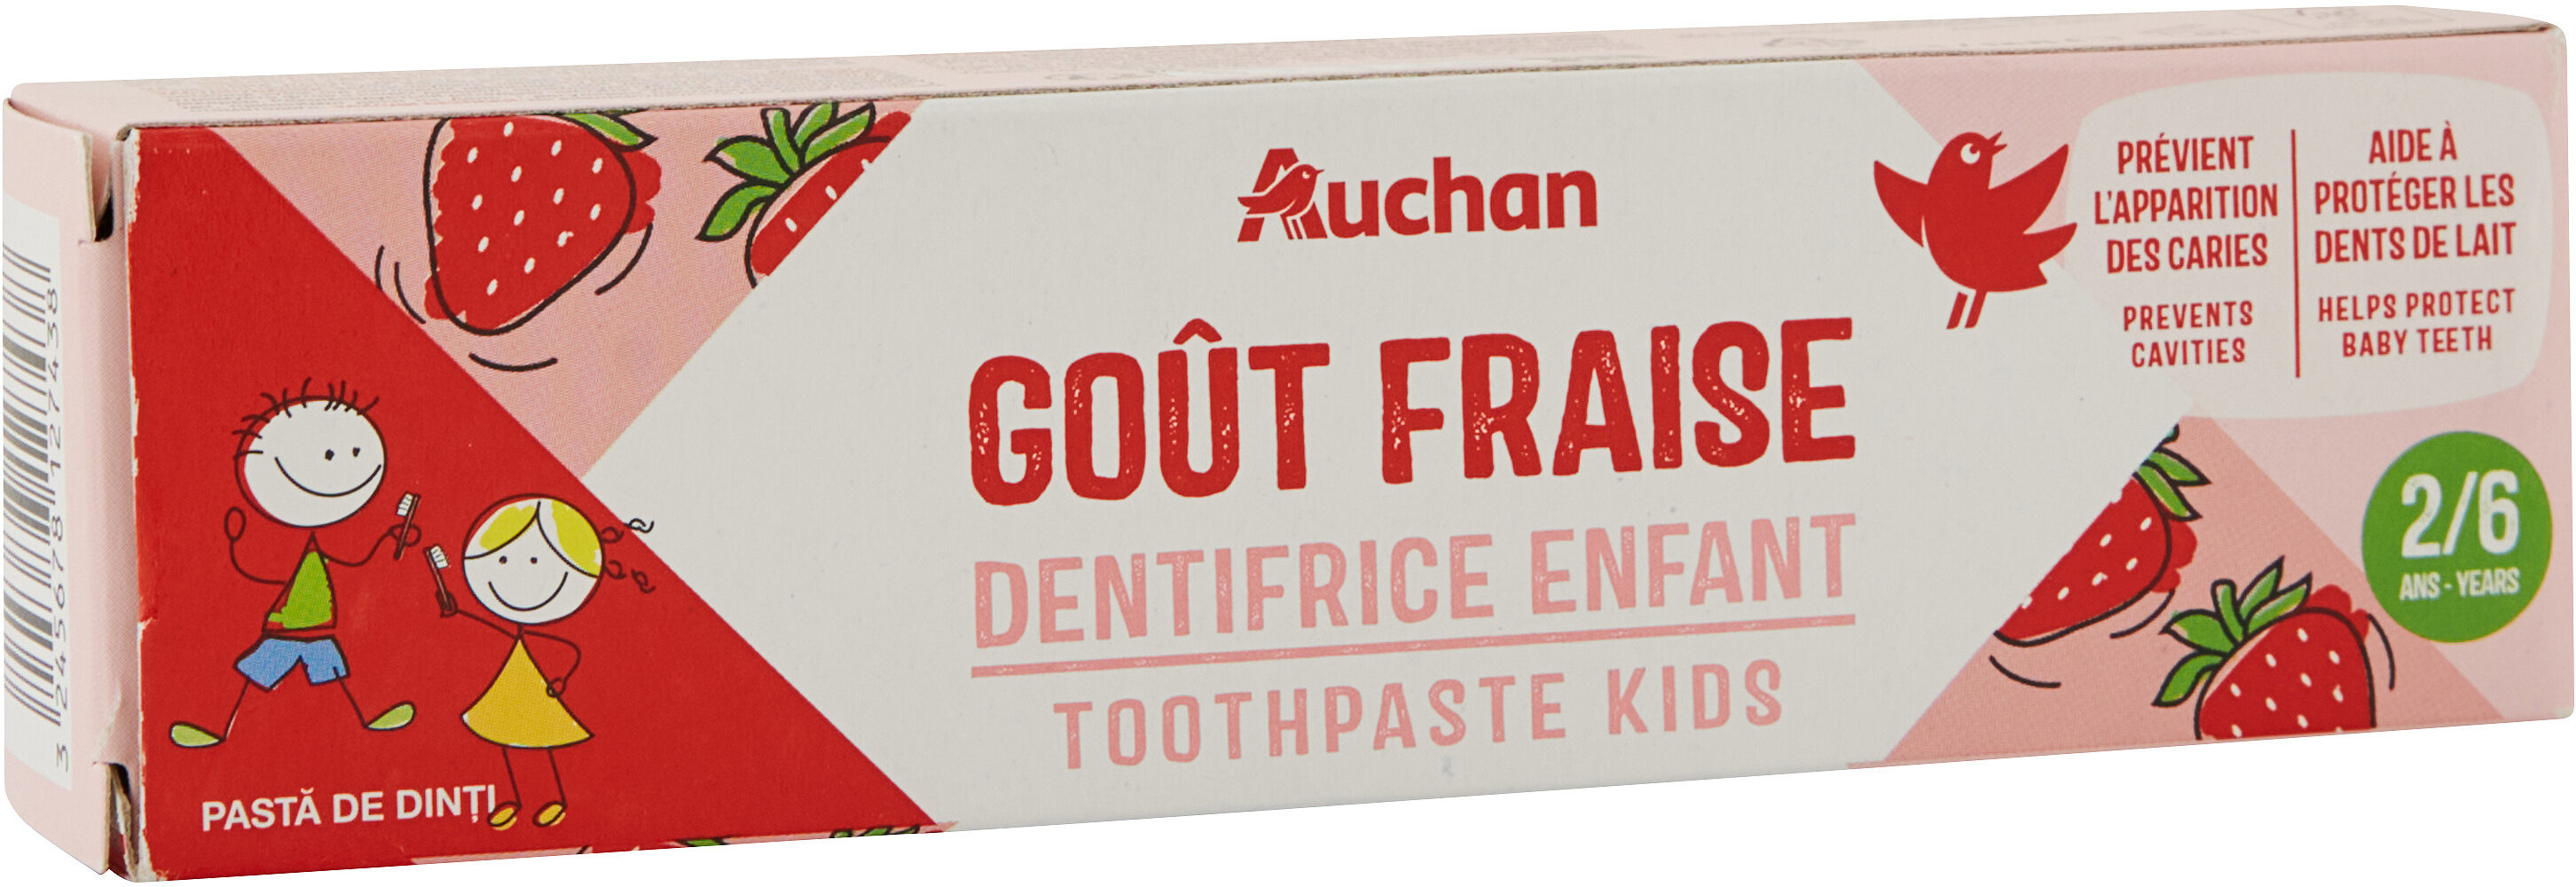 Auchan kids dentifrice fraise tube 2 + - 50ml - Produkt - fr